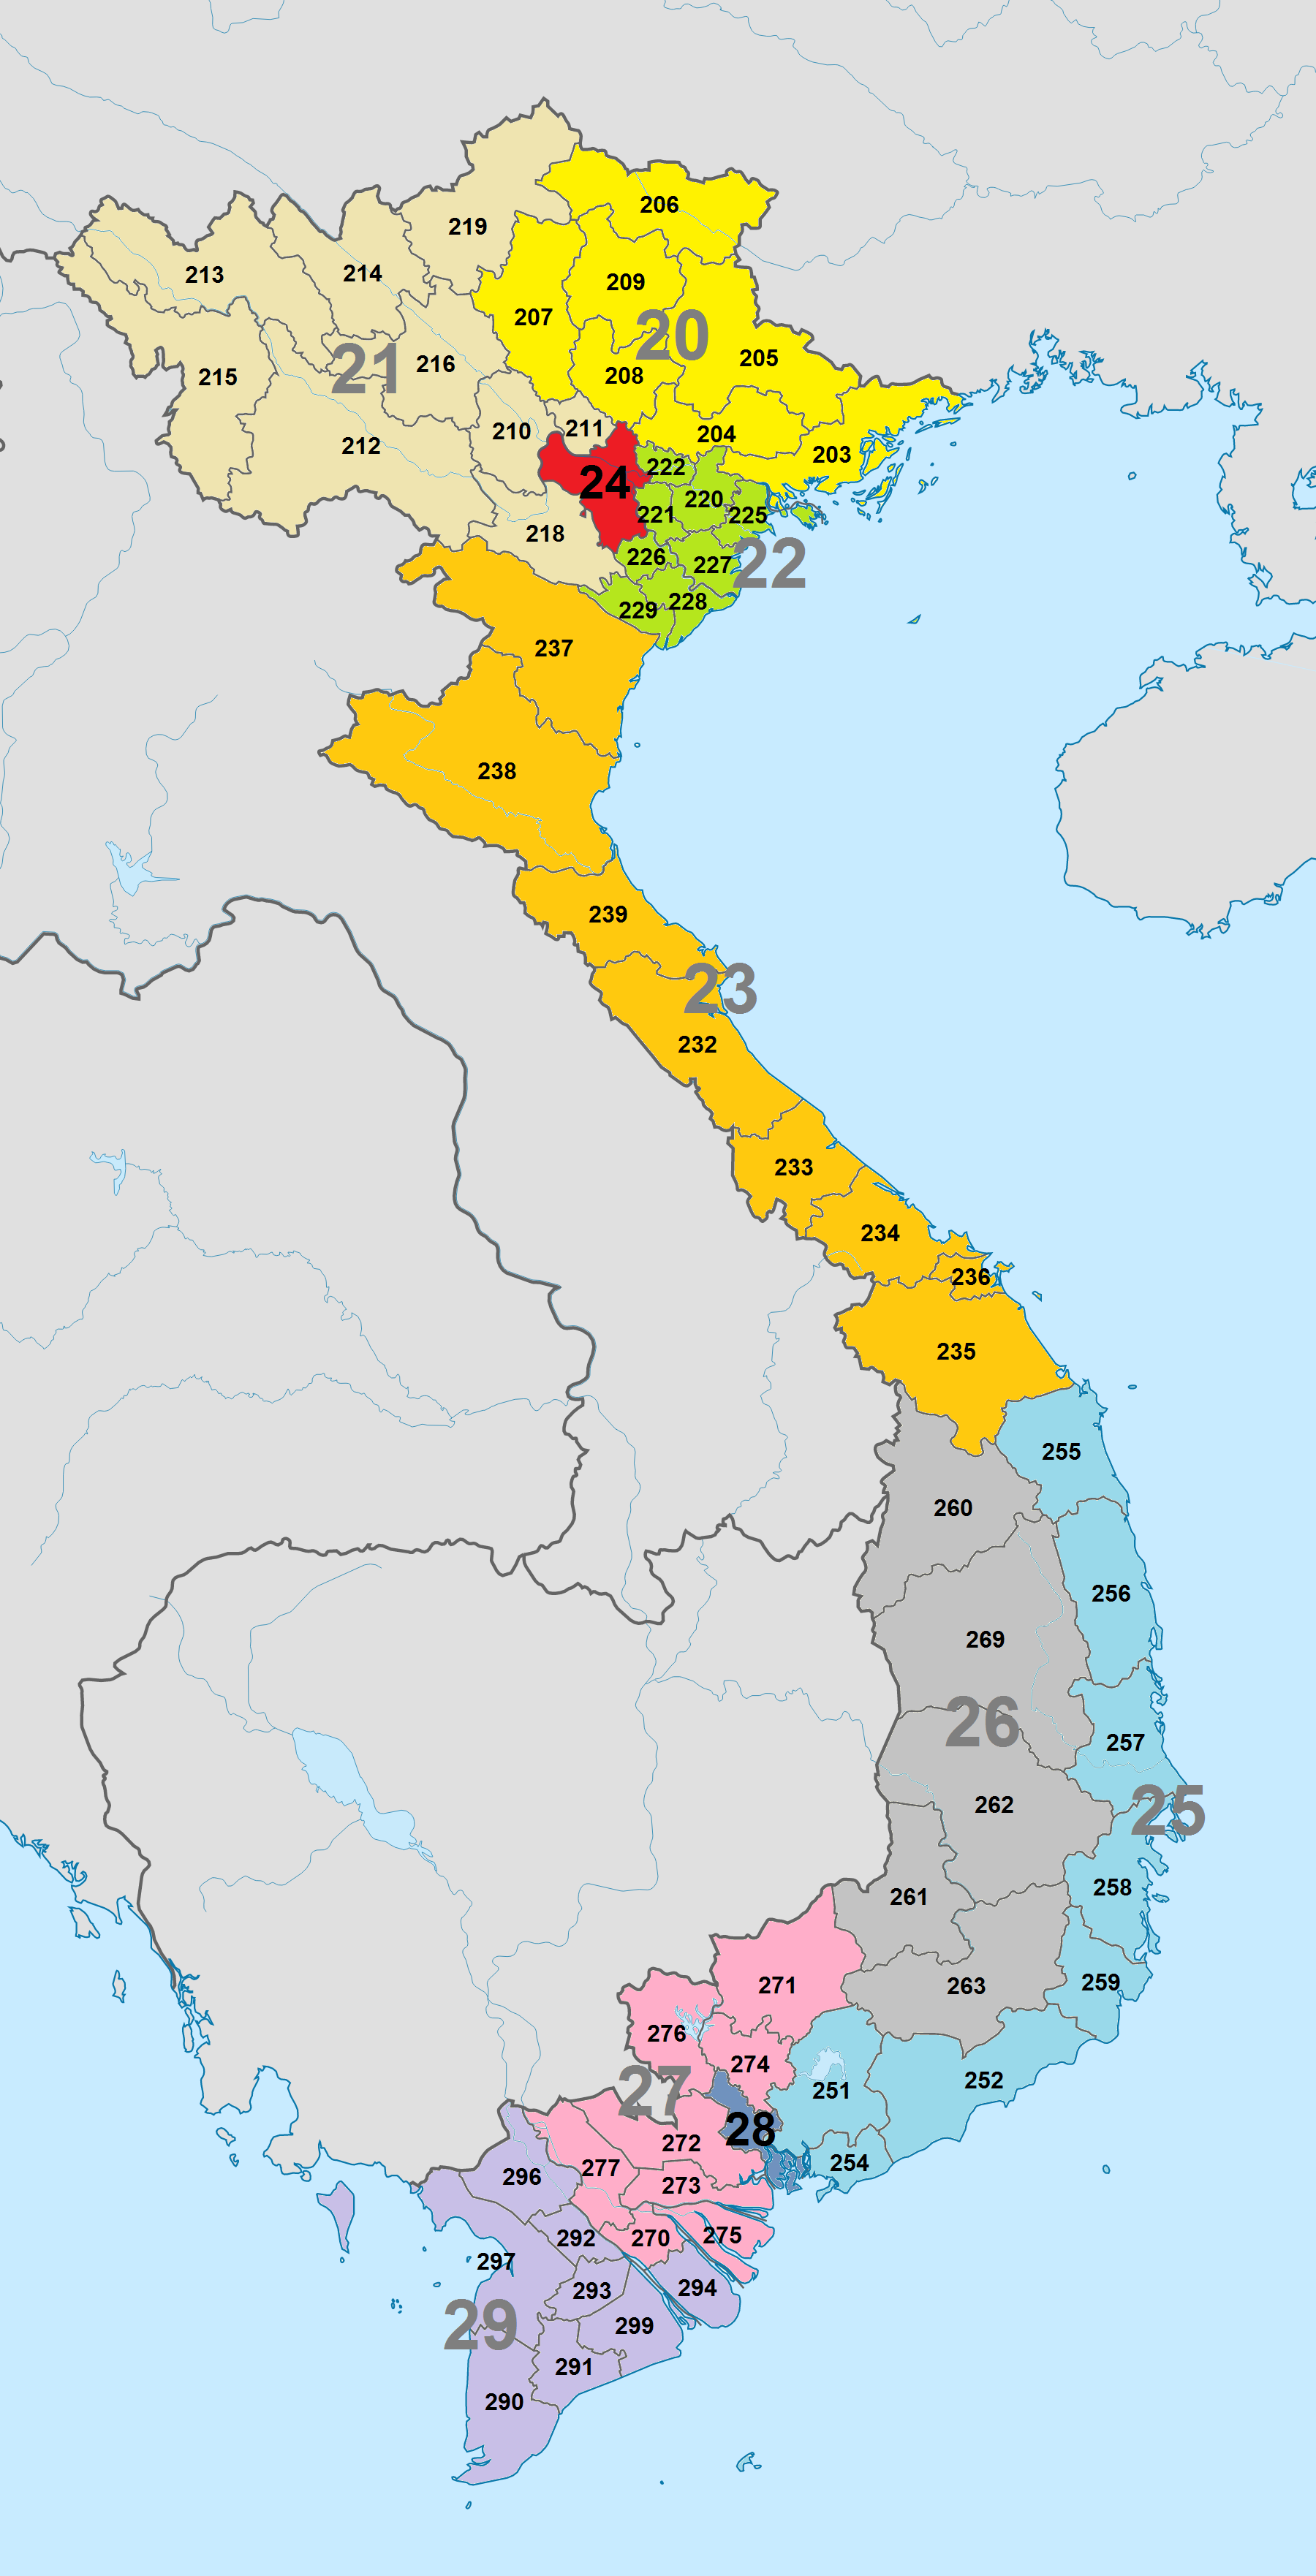 Tập Tin:Bản Đồ Mã Vùng Điện Thoại.Png – Wikipedia Tiếng Việt